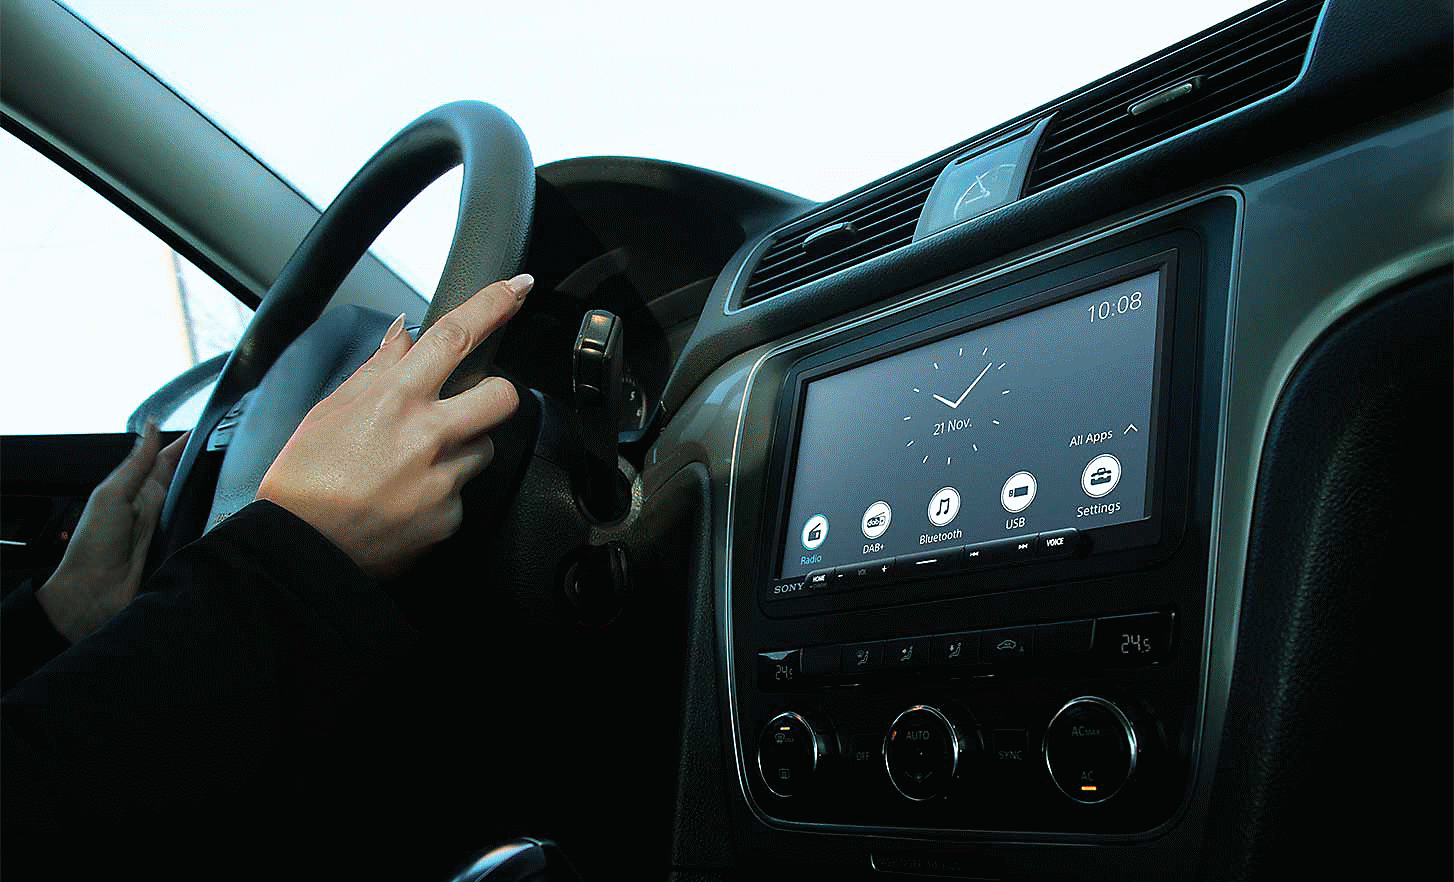 Image du XAV-AX4050 sur le tableau de bord d'une voiture avec une horloge et divers boutons à l'écran